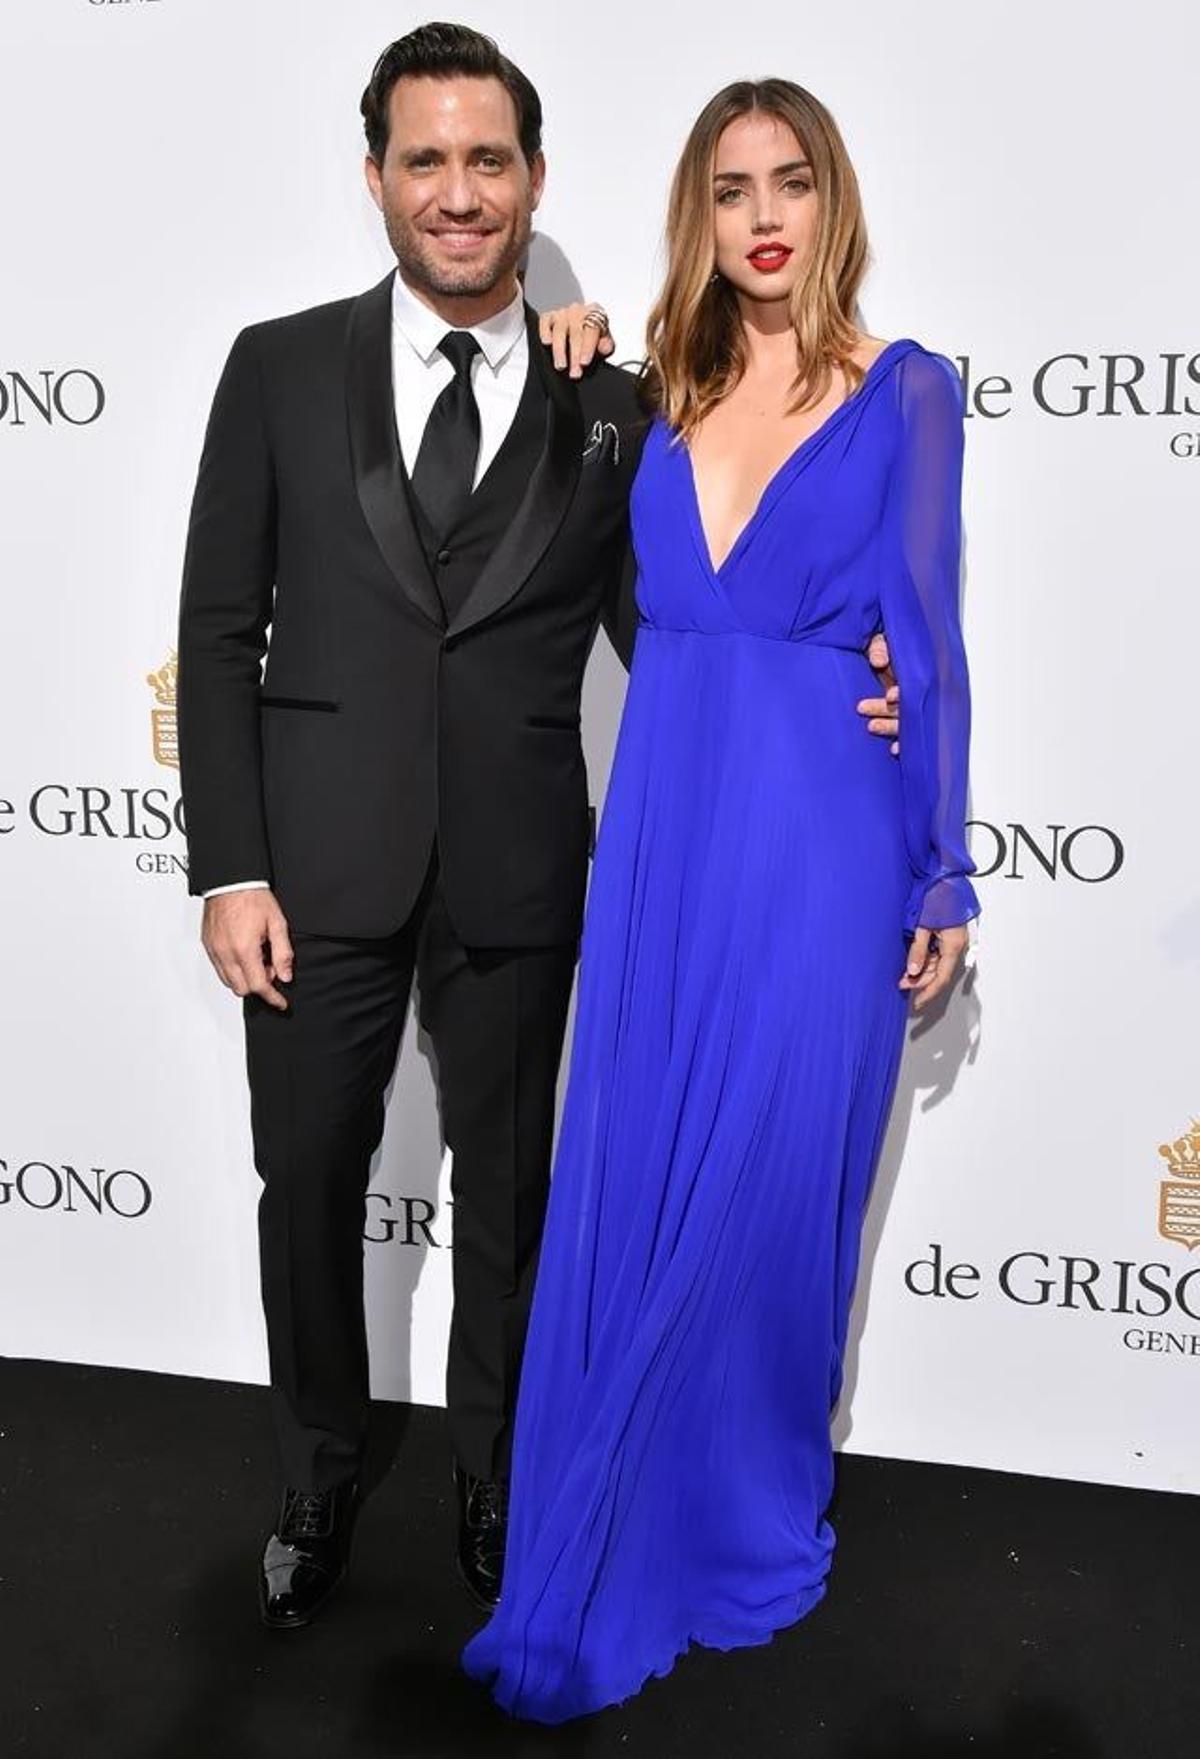 Édgar Ramírez y Ana de Armas, en la fiesta Grisogono del Festival de Cannes 2016.